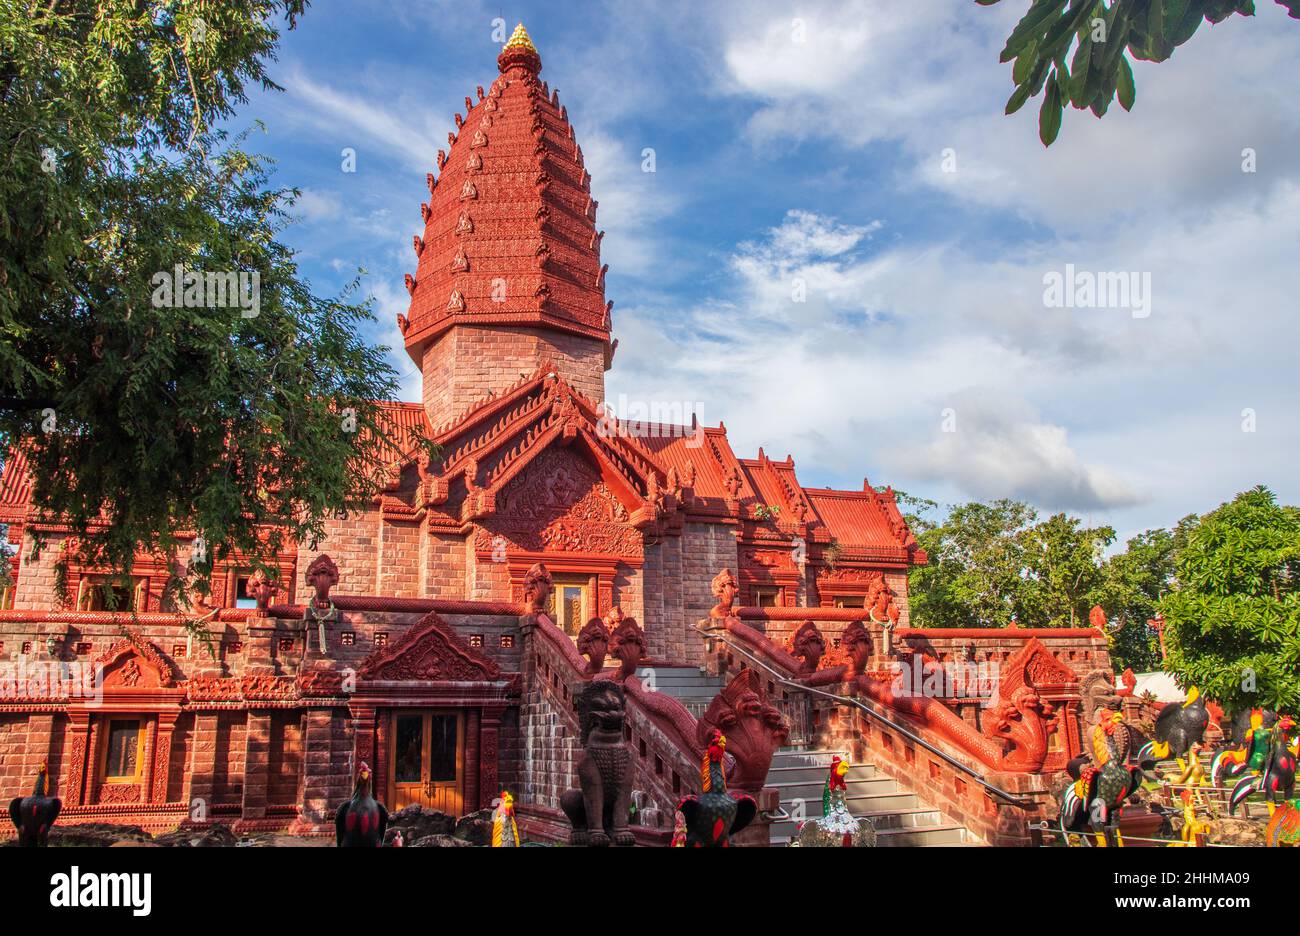 Le Temple thaïlandais Wat Phrai Phathana district Phu Sing de la province de Sisaket dans la zone frontalière entre la Thaïlande et le Cambodge est bien intéressant de voir Banque D'Images